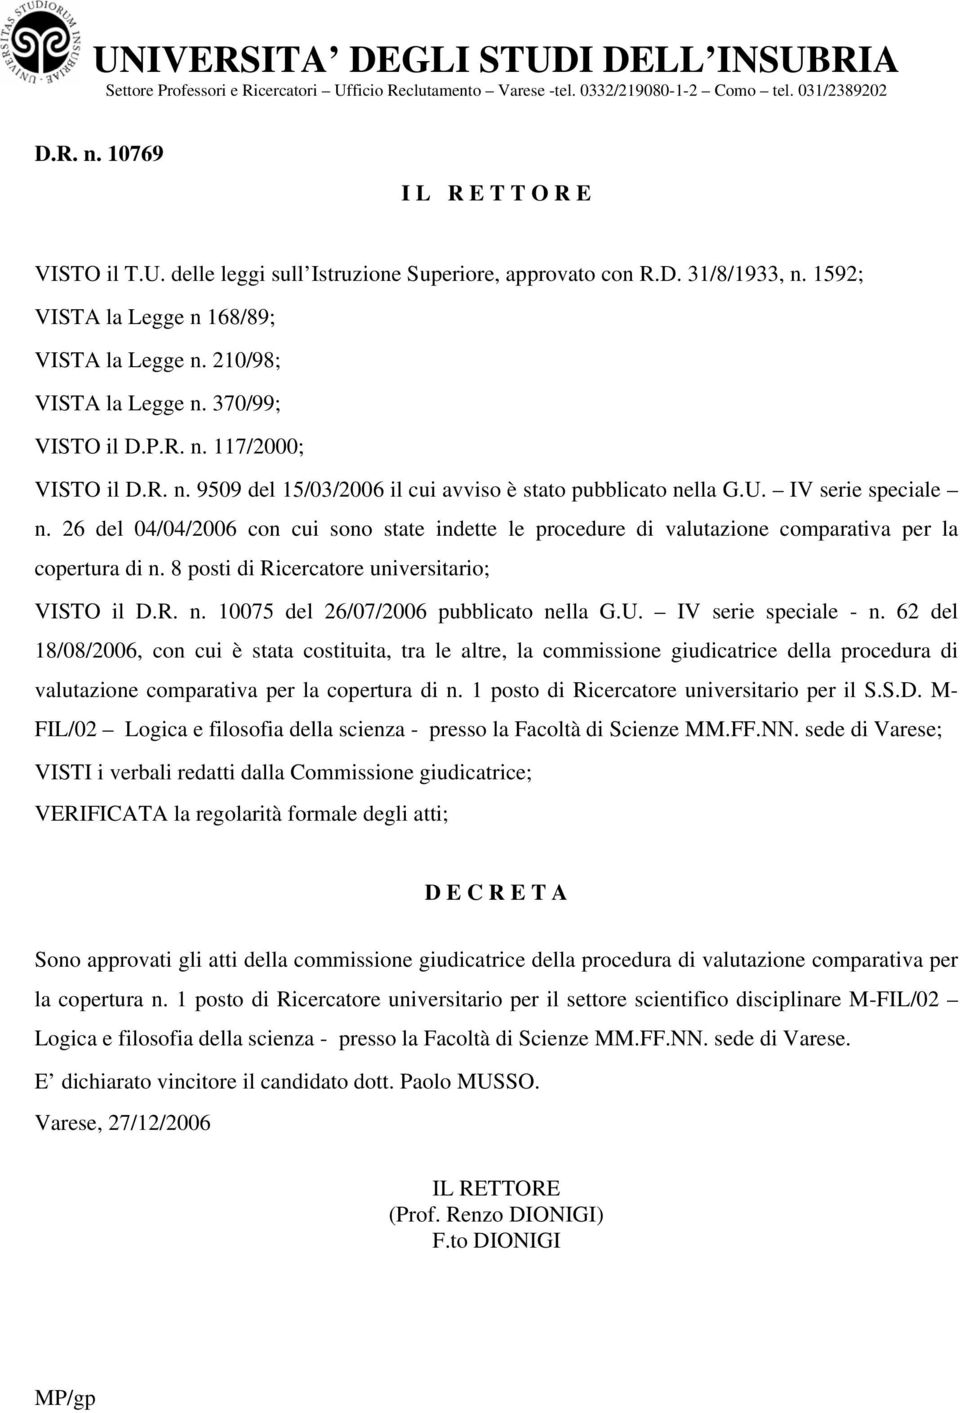 IV serie speciale n. 26 del 04/04/2006 cn cui sn state indette le prcedure di valutazine cmparativa per la cpertura di n. 8 psti di Ricercatre universitari; VISTO il D.R. n. 10075 del 26/07/2006 pubblicat nella G.